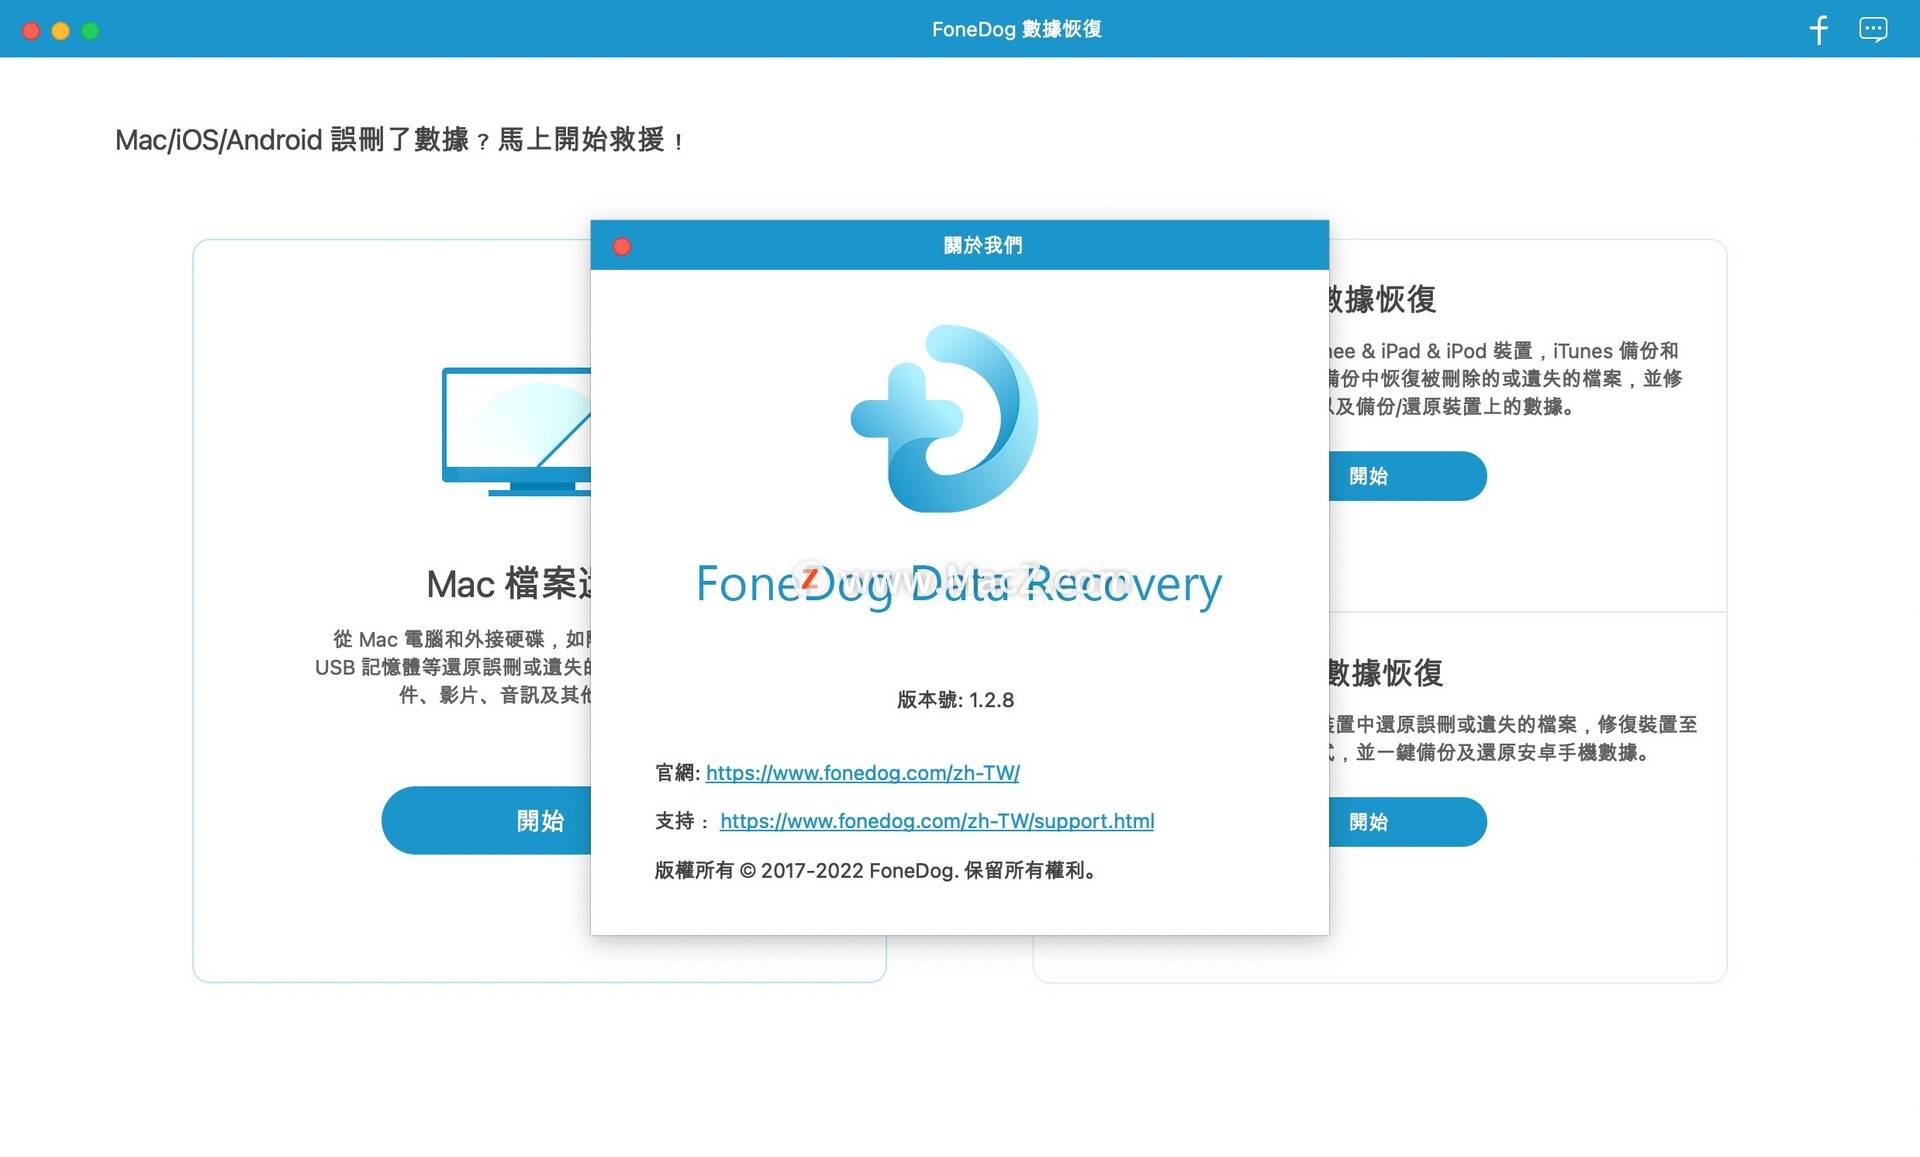 恢复华为手机数据恢复软件
:电脑数据恢复软件：FoneDog Data Recovery mac注册